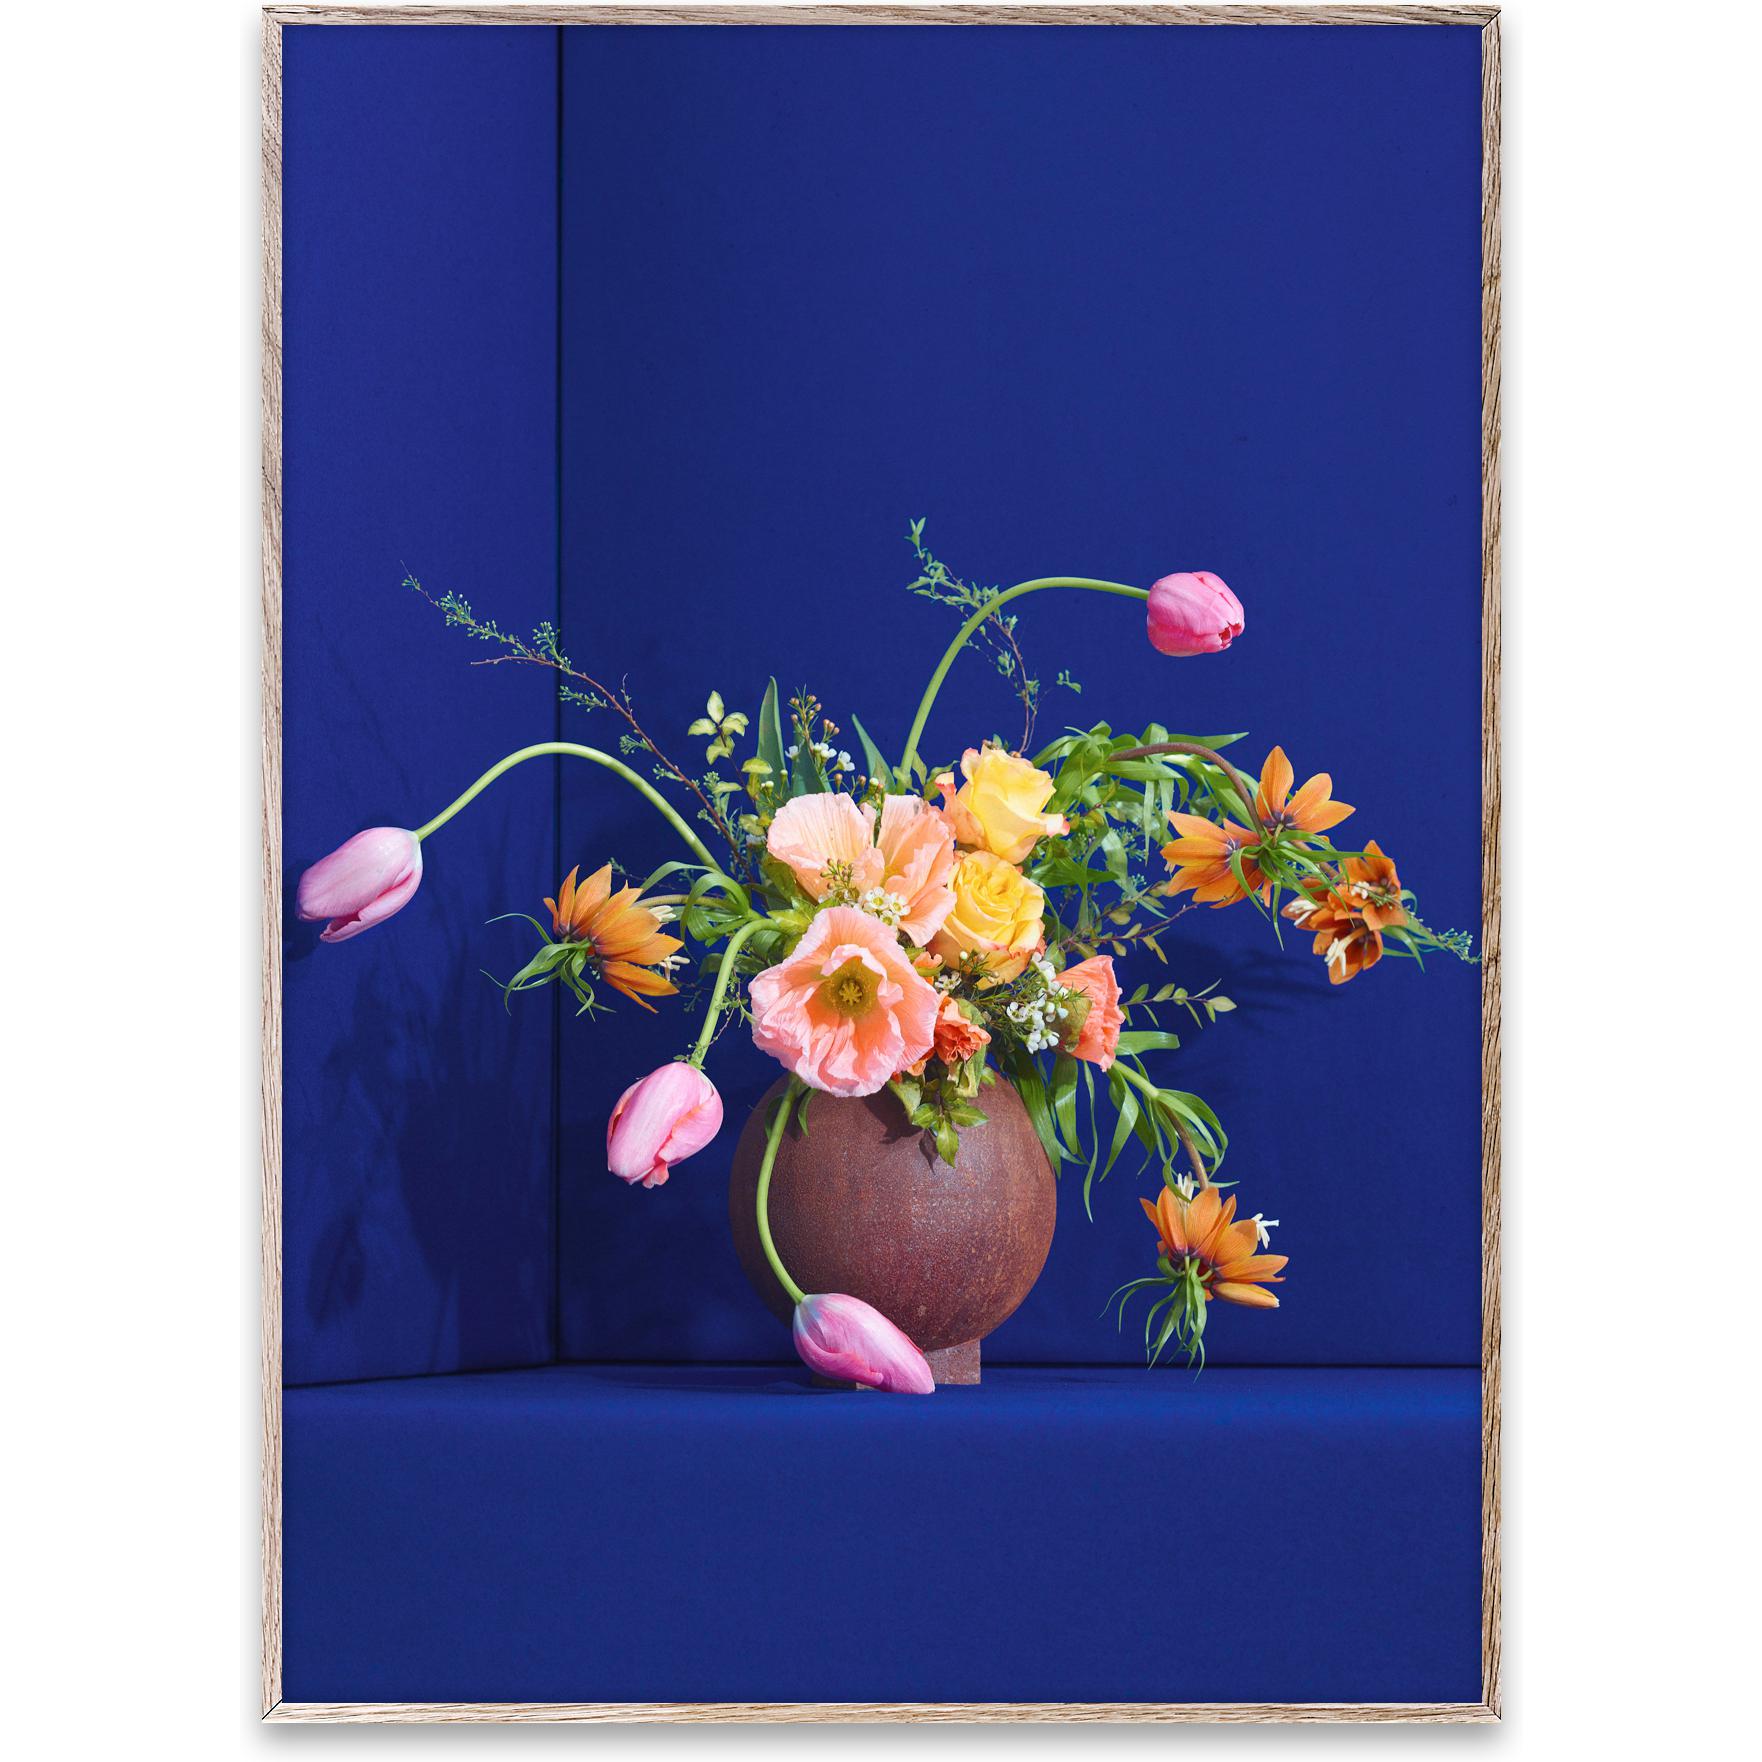 Coletivo de papel Blomst 01 Poster 50x70 cm, azul